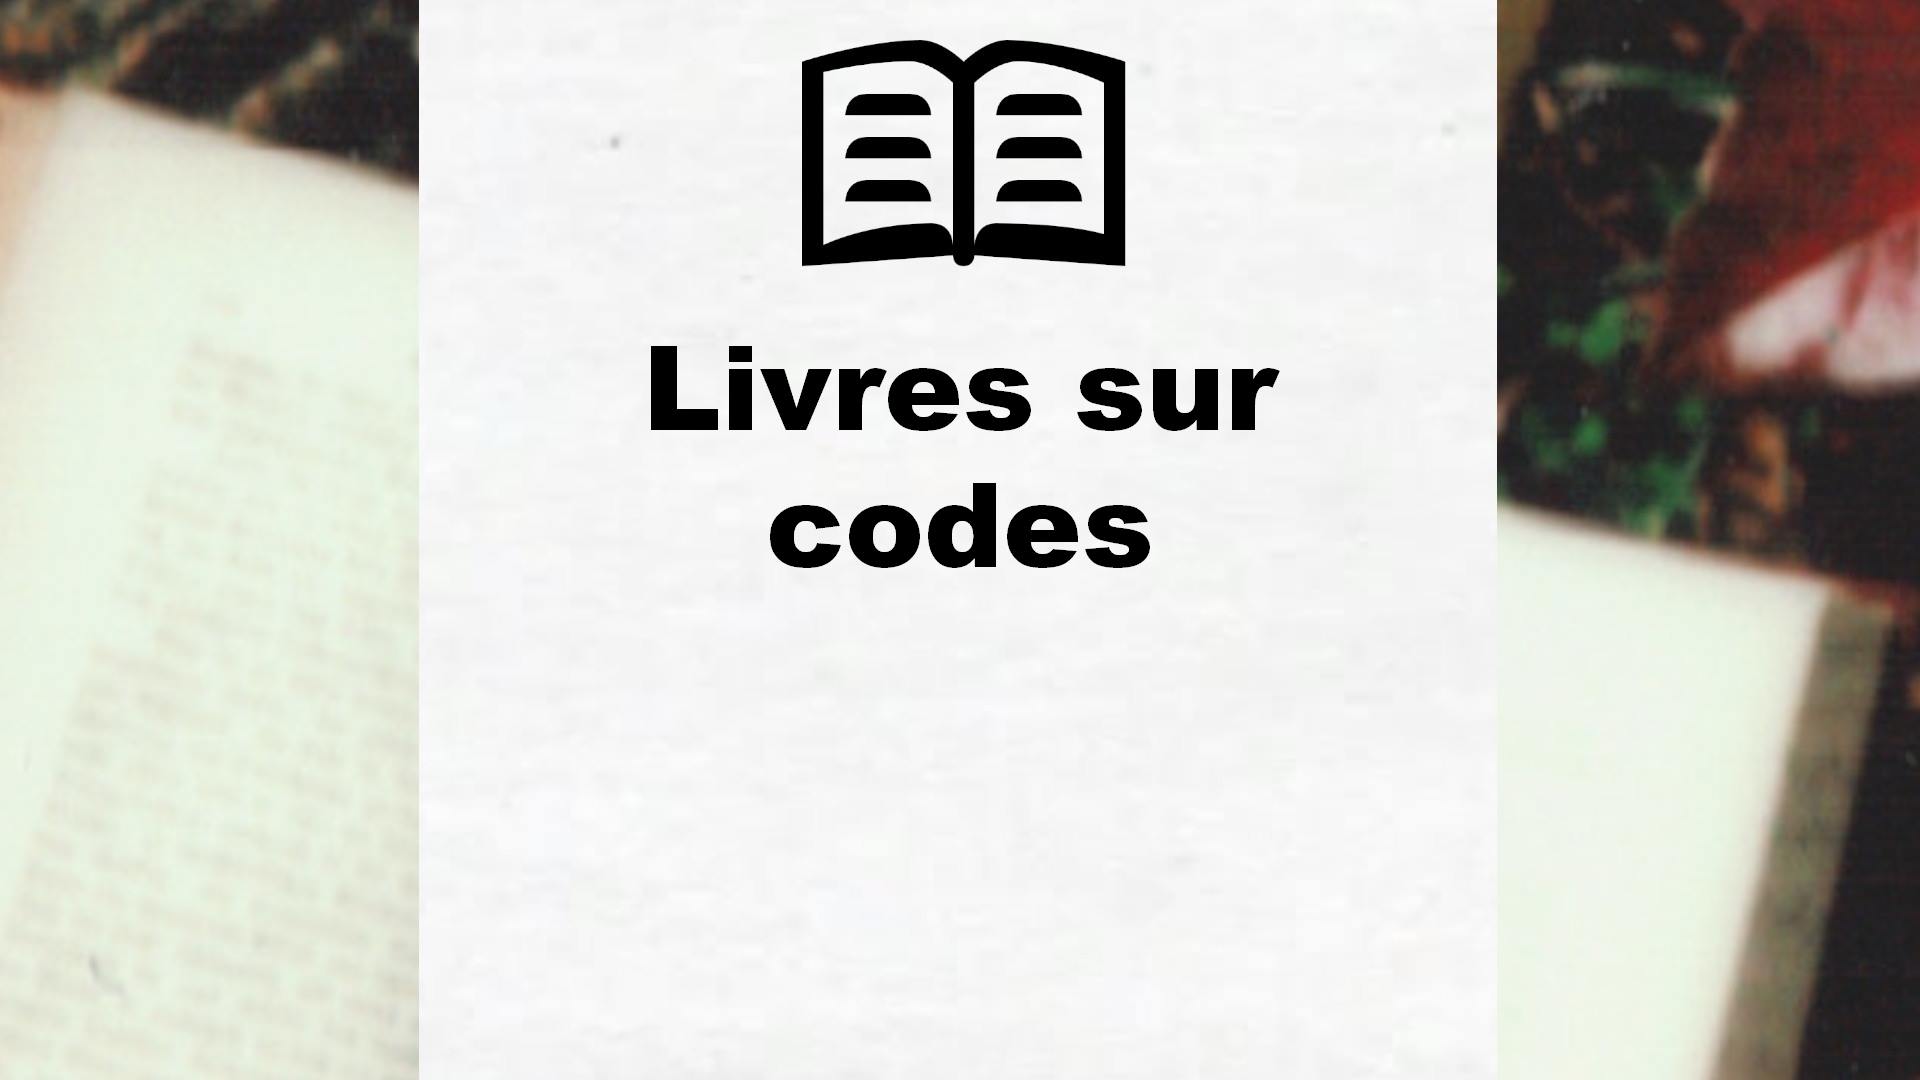 Livres sur codes